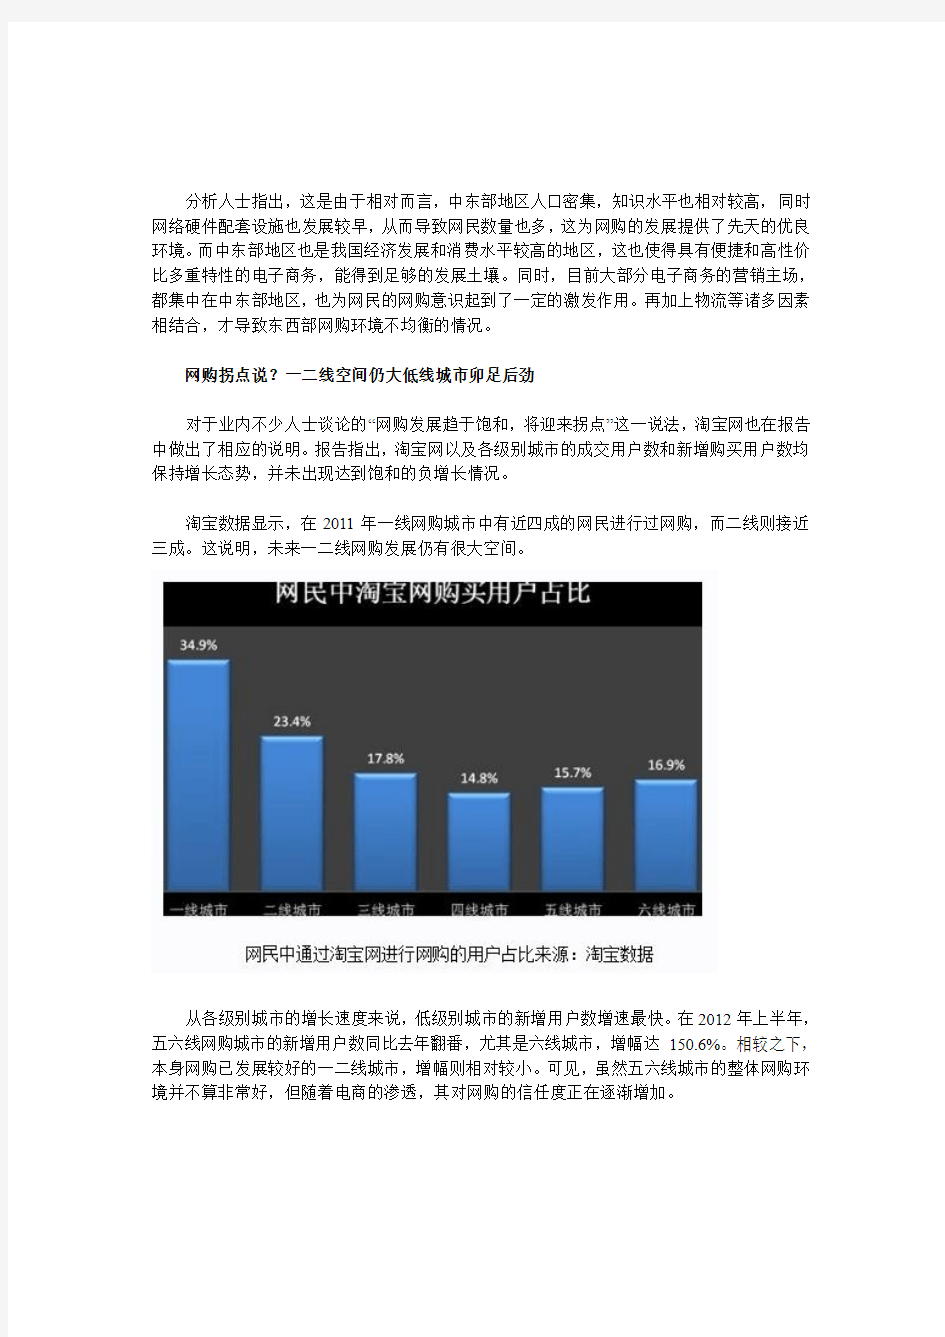 《中国城市网购发展环境报告》(全文)